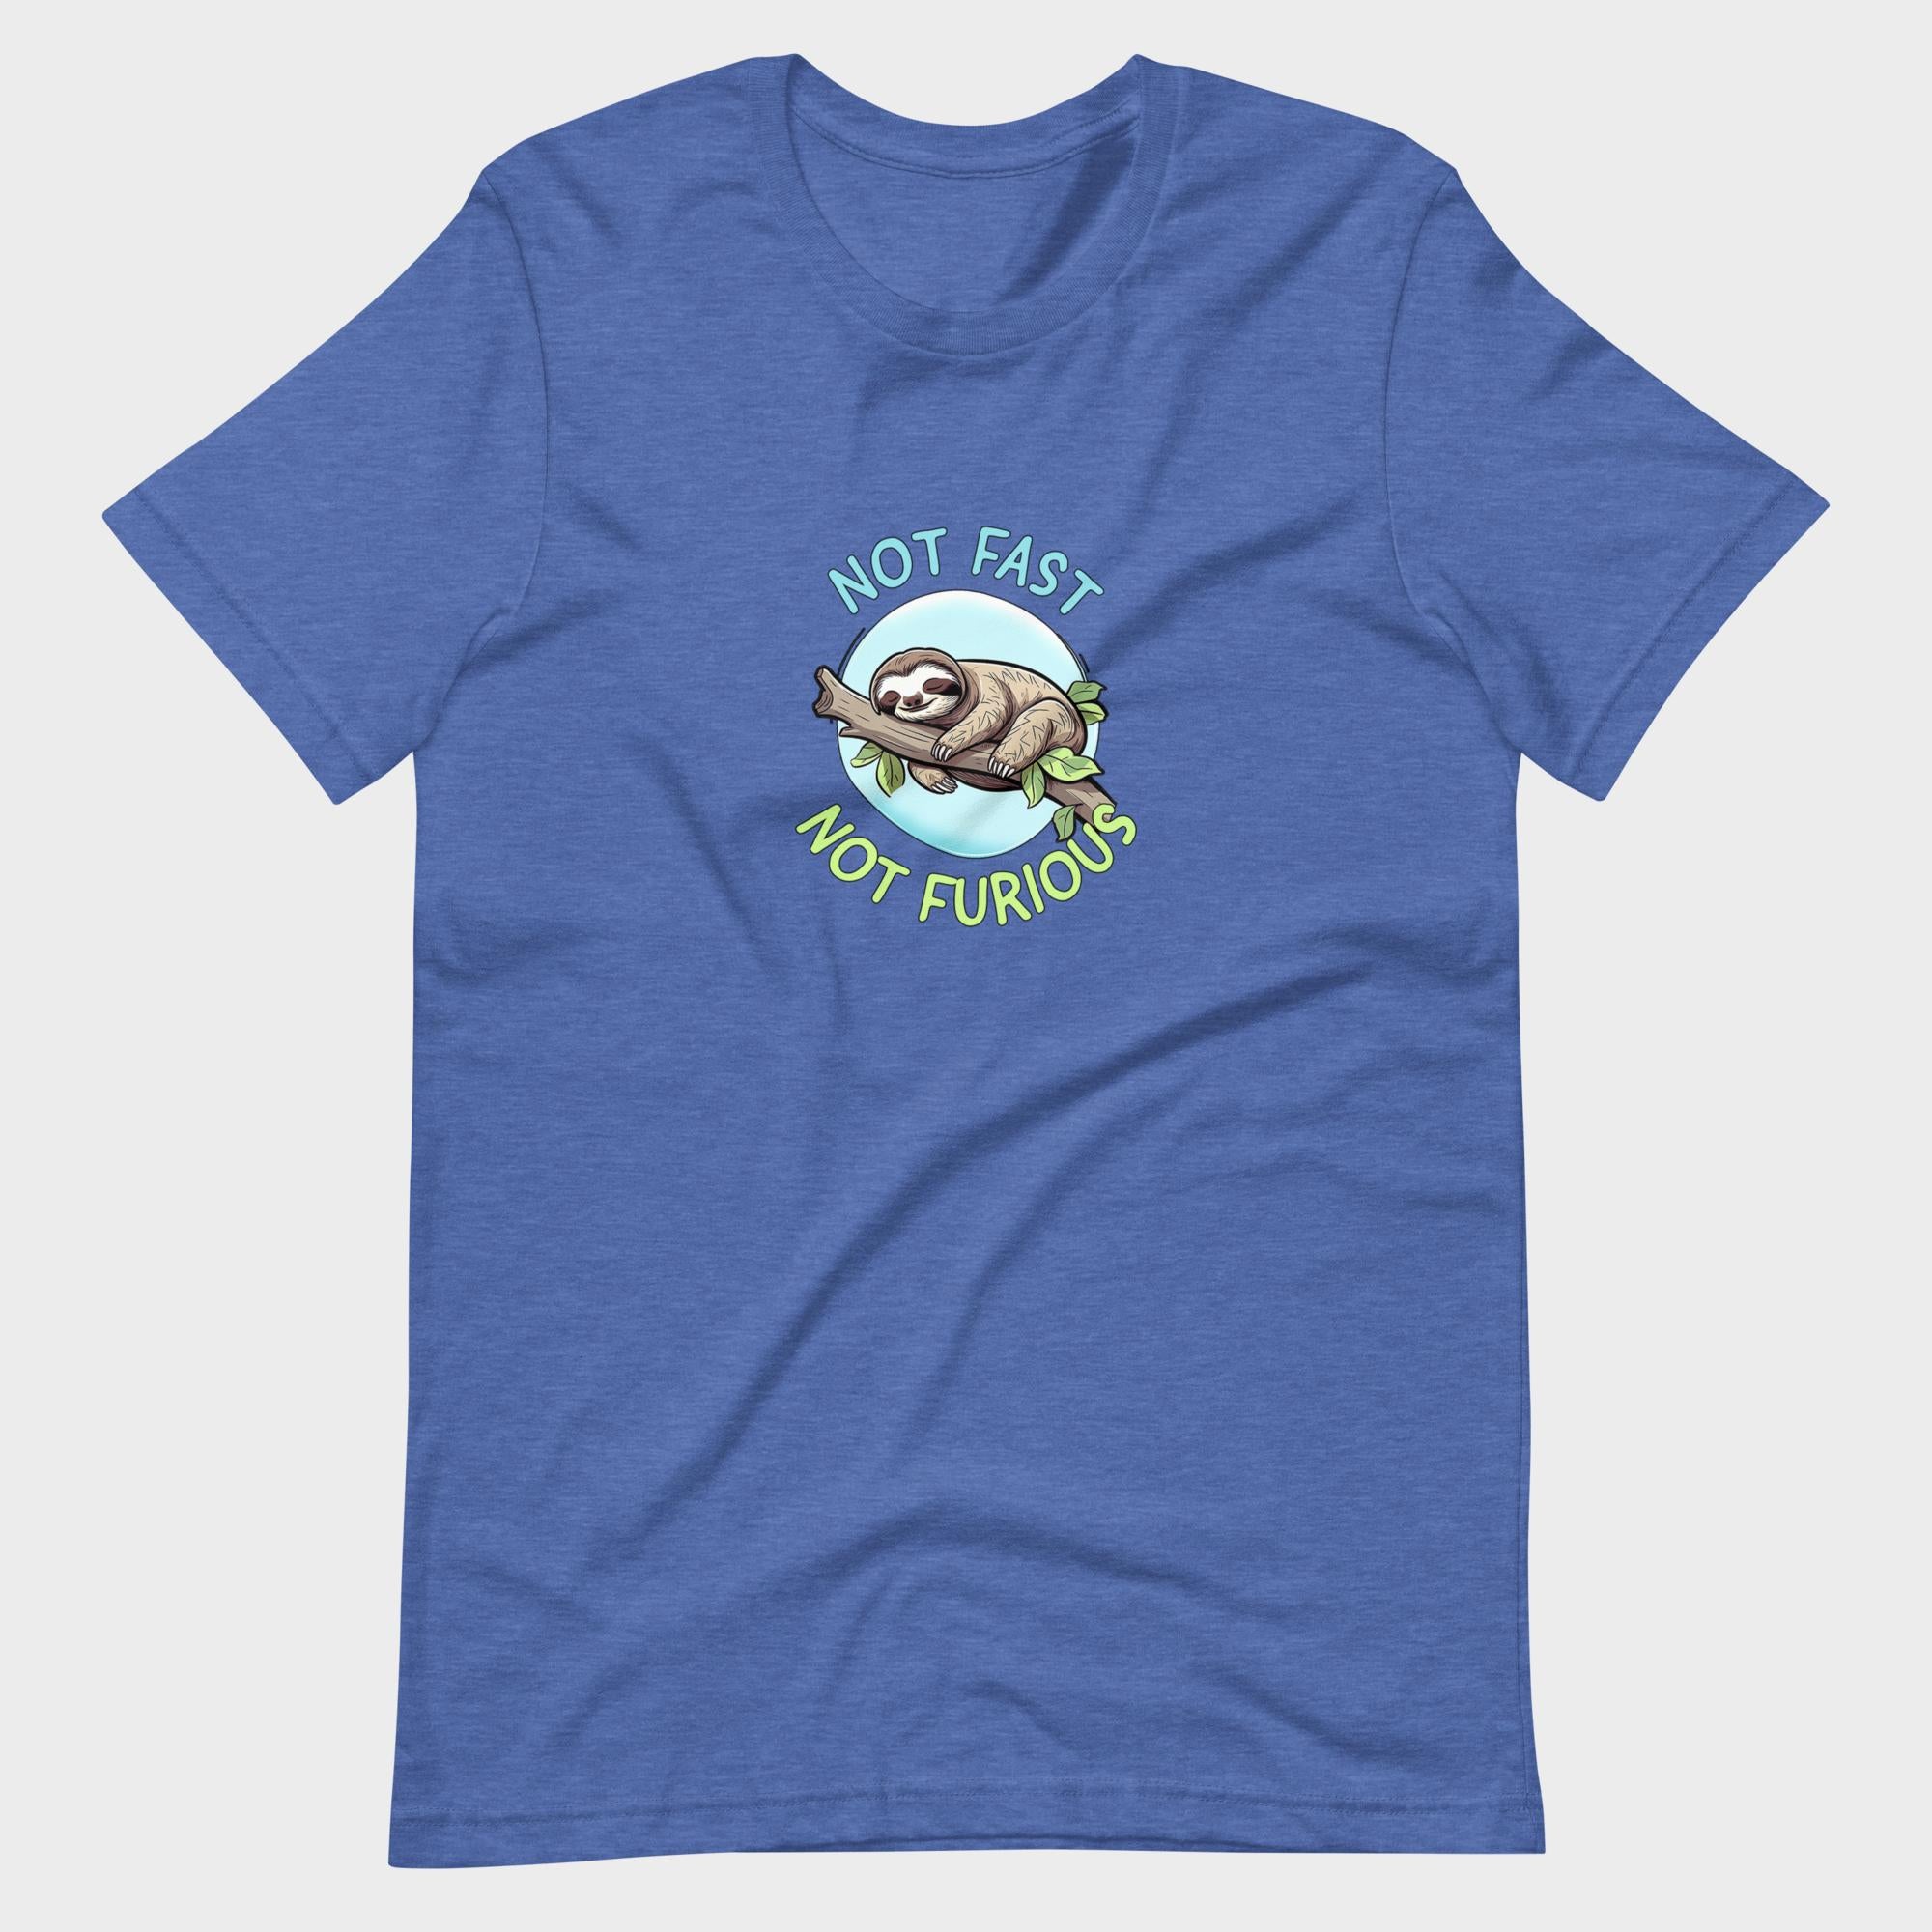 Not Fast. Not Furious. - T-Shirt